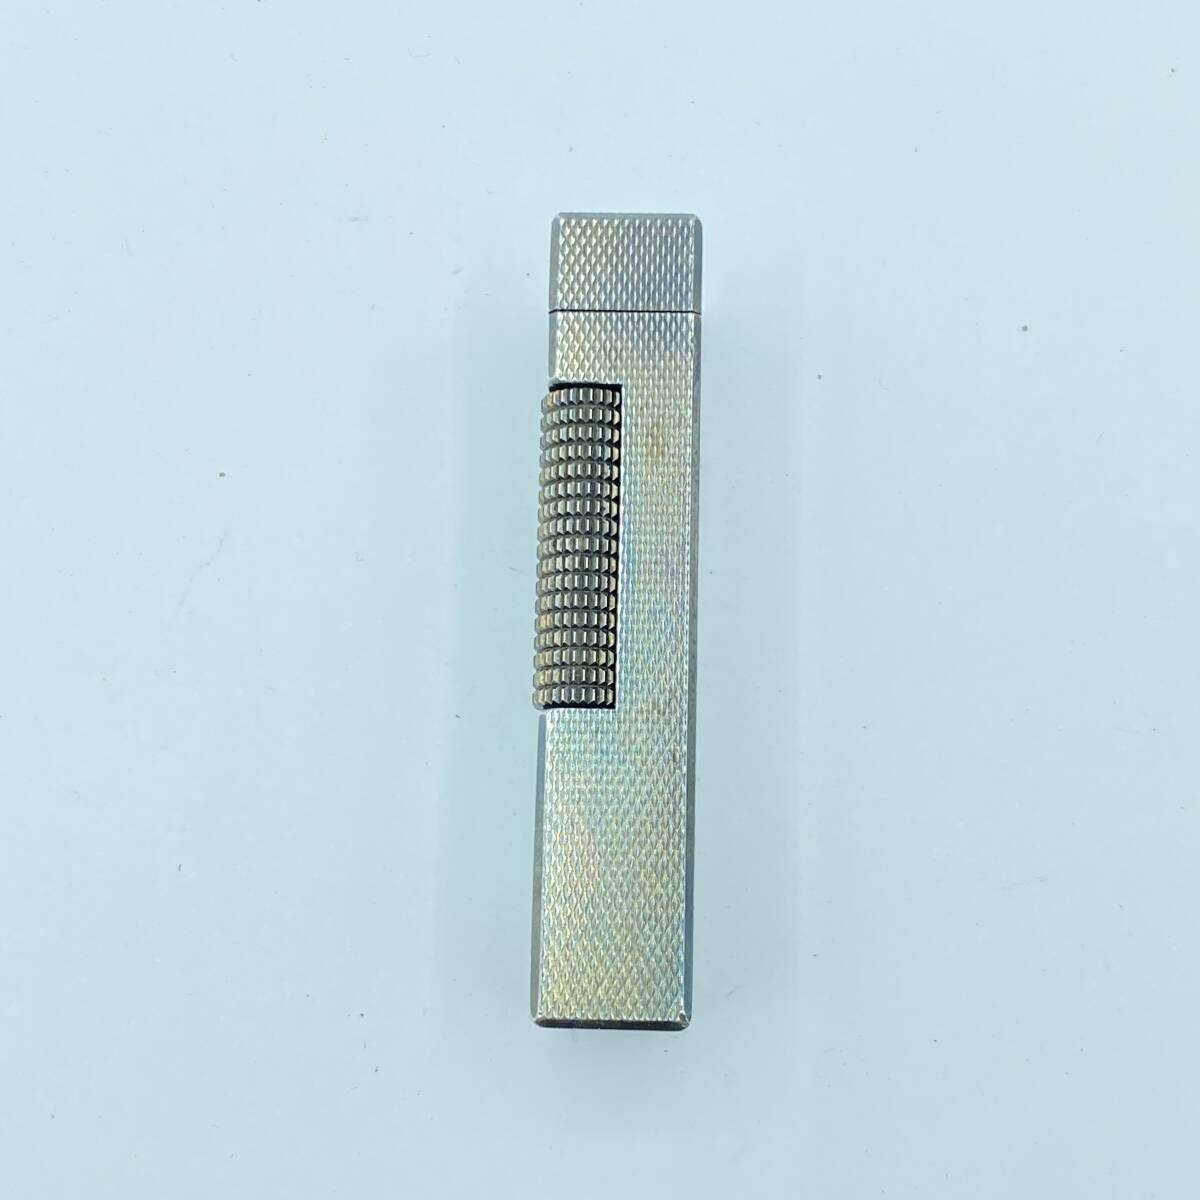 [H35] зажигалка Dunhill Dunhill серебряный цвет вспышка нет надеты огонь не проверка текущее состояние товар 